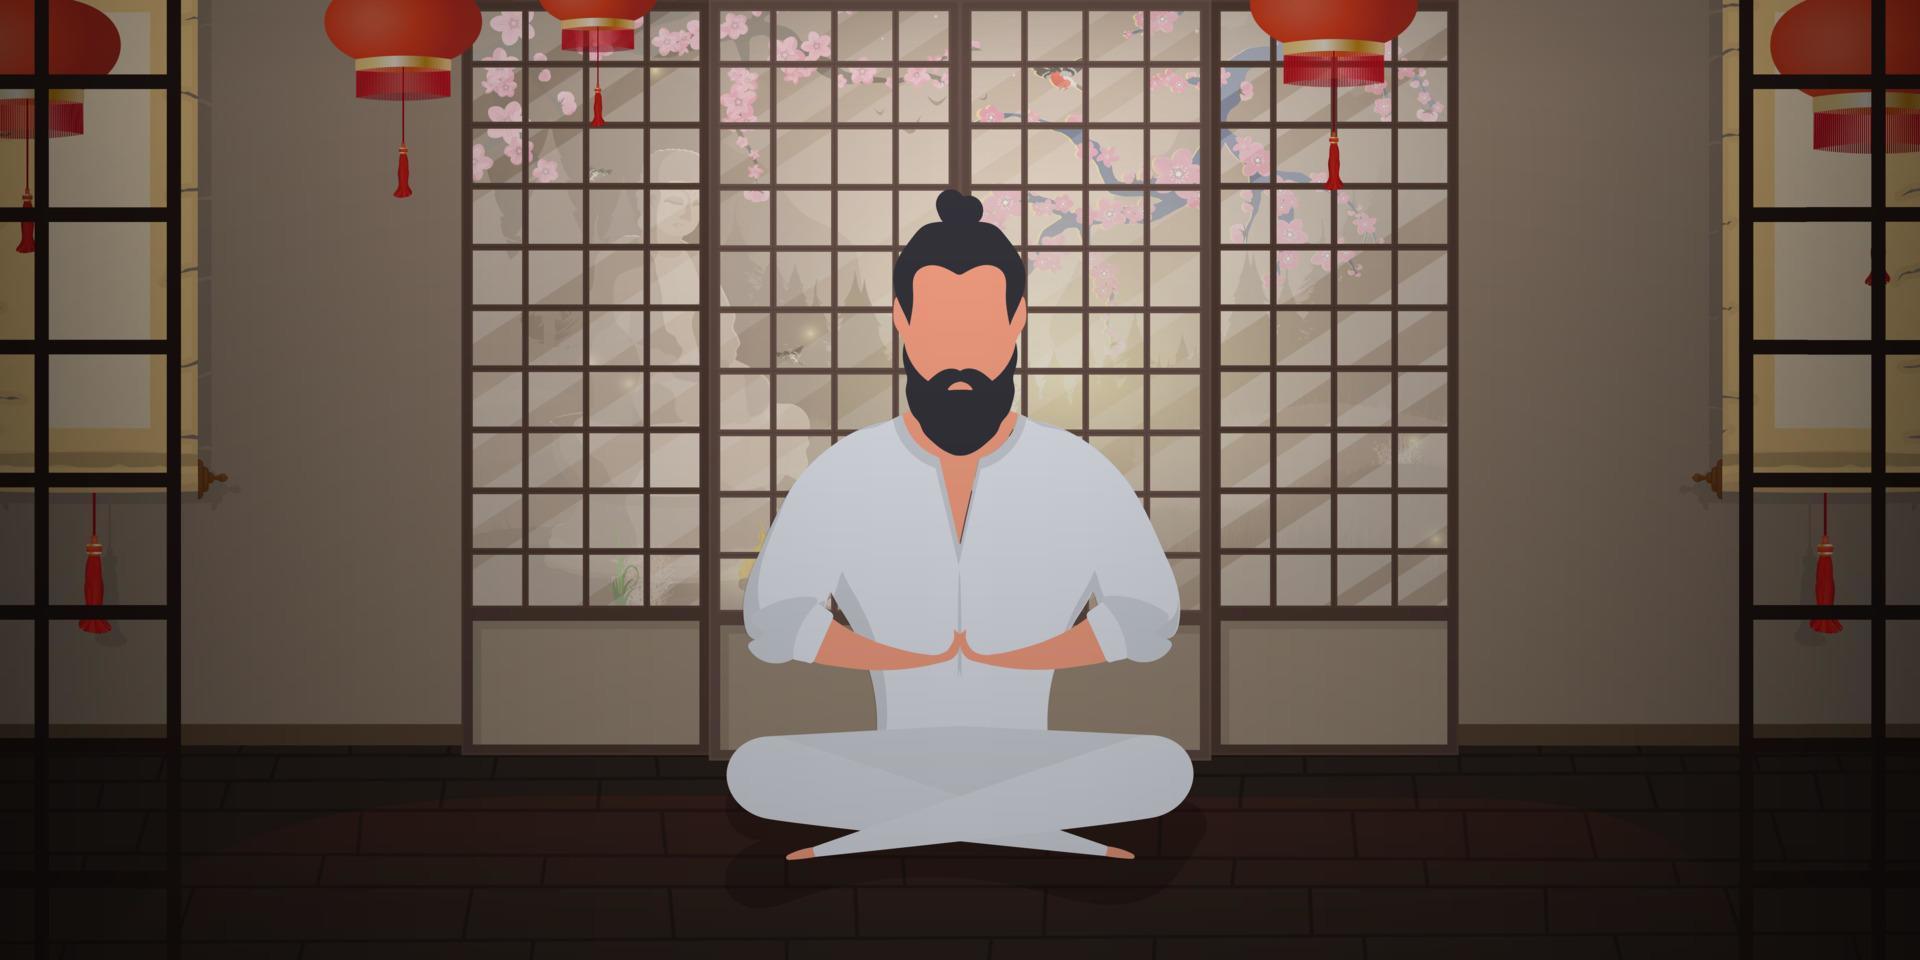 um monge medita em uma sala de estilo japonês. um samurai praticando meditação ou ioga. estilo de desenho animado. ilustração vetorial. vetor